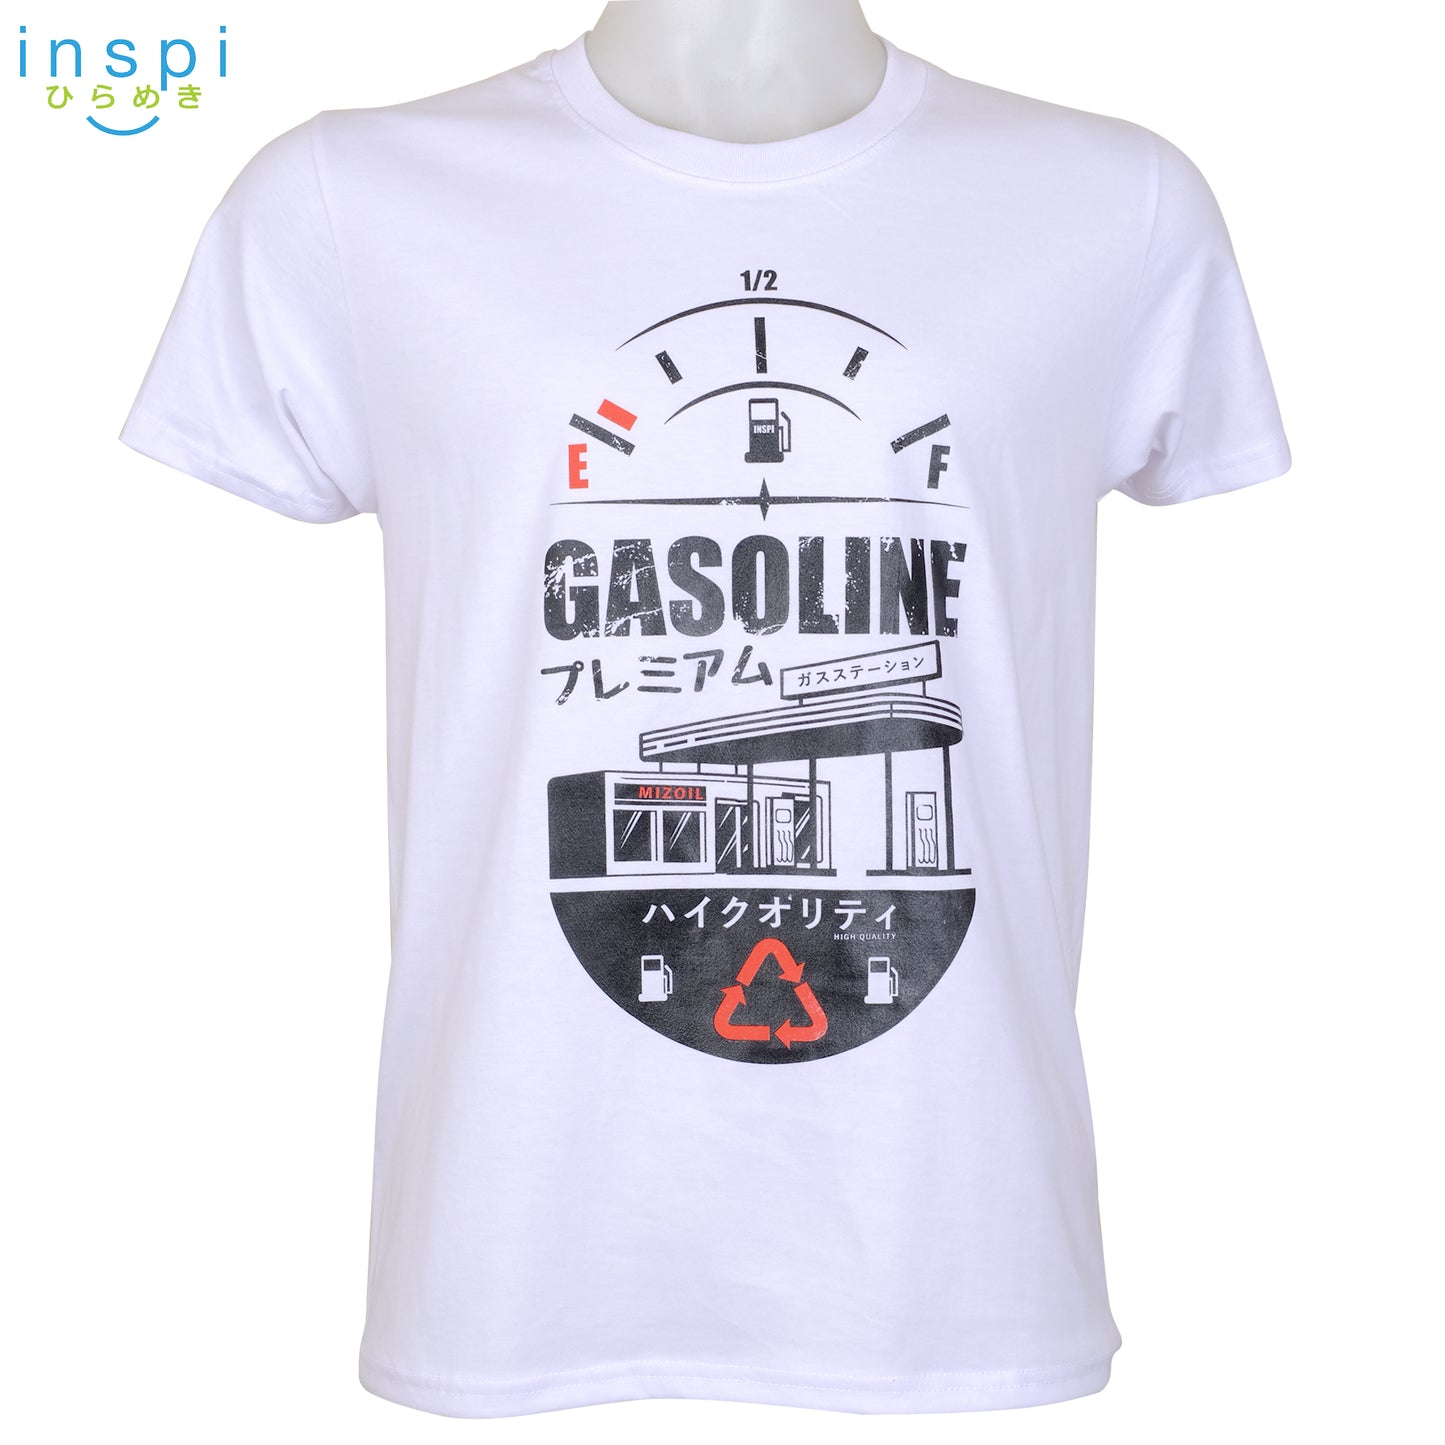 INSPI Tees Gasoline Graphic Tshirt